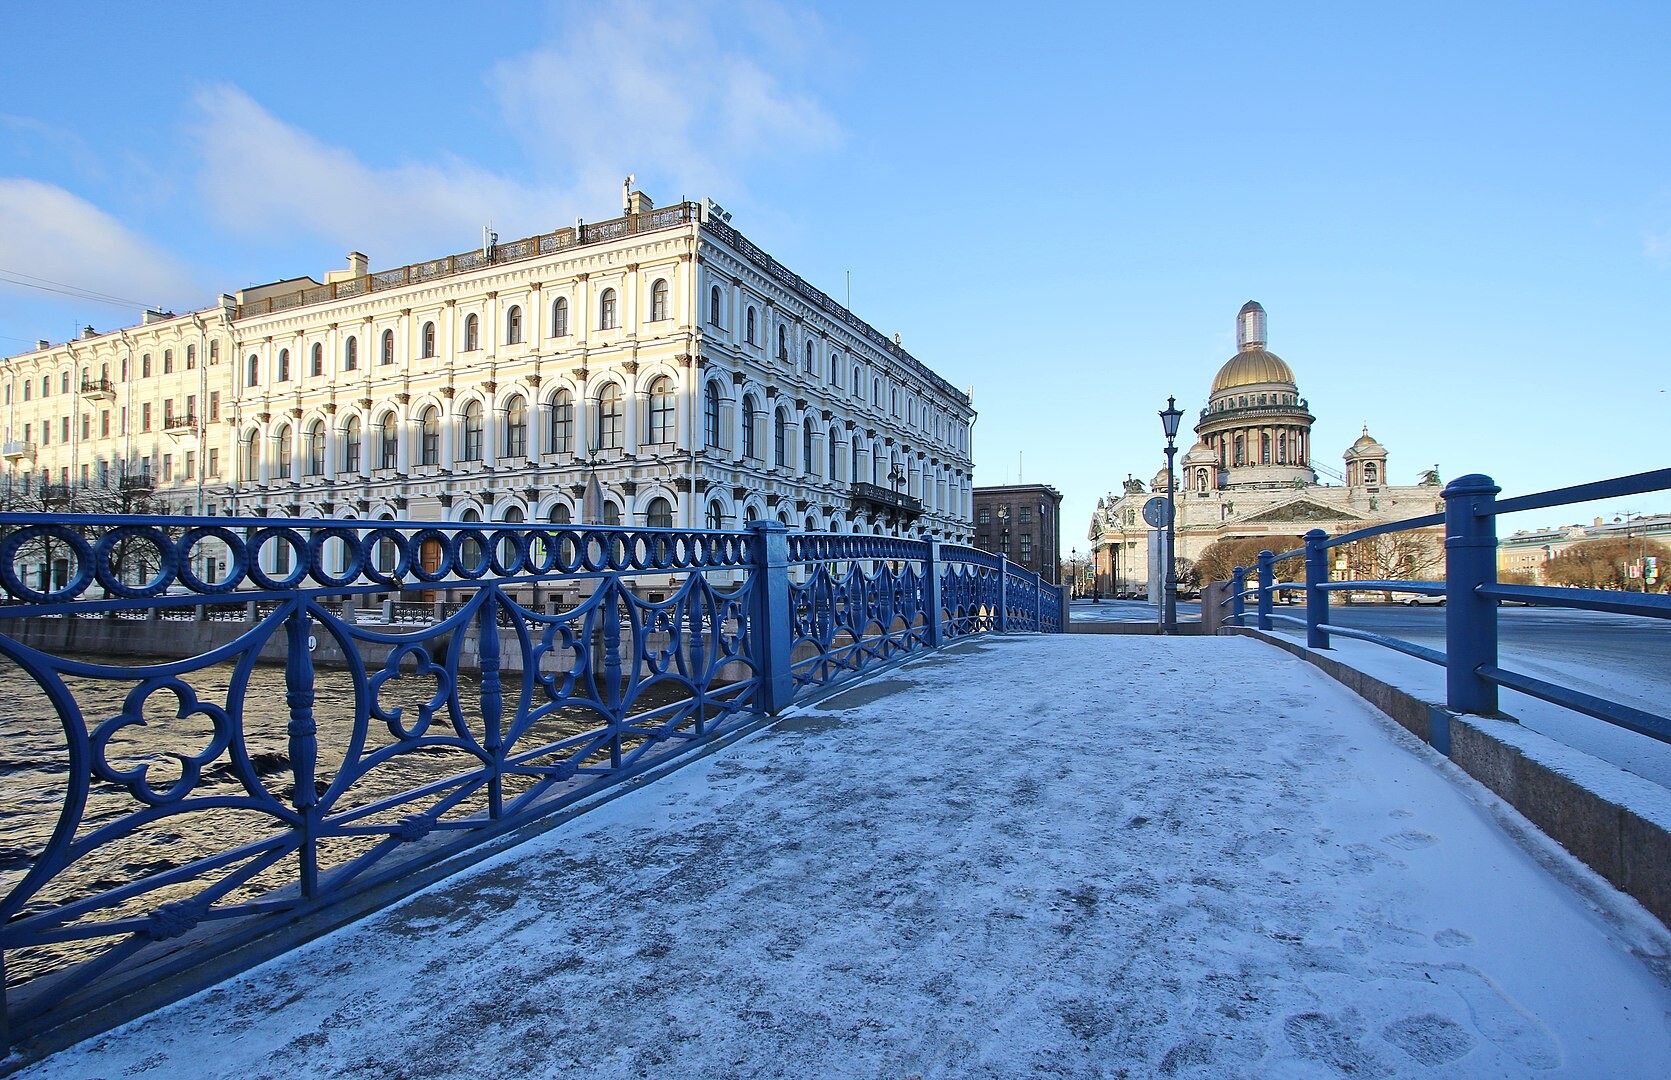 Ширина синего моста в Санкт-Петербурге